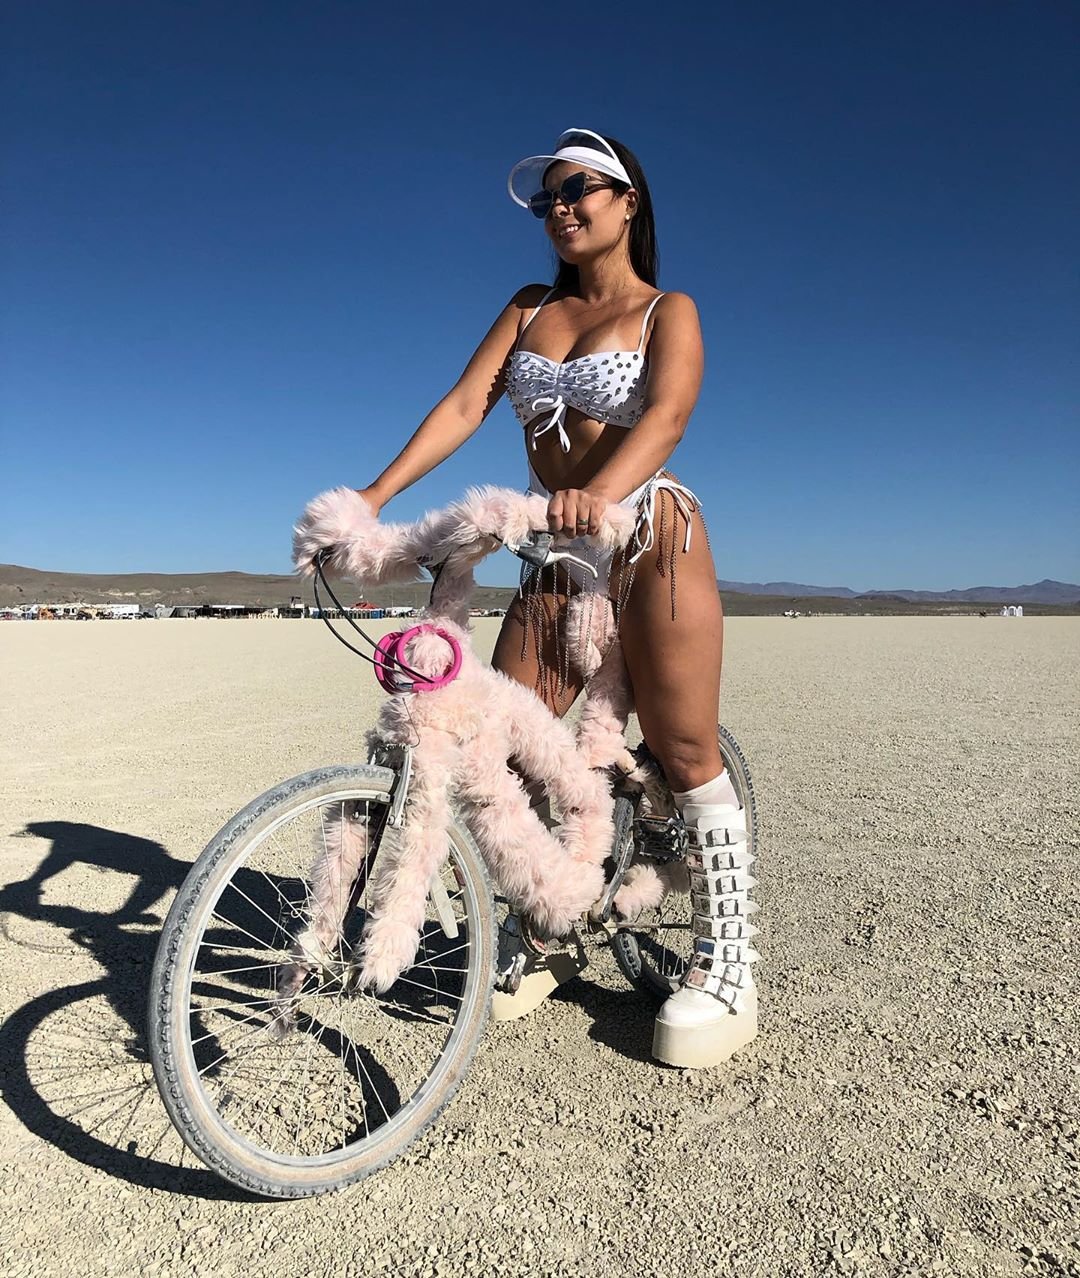 Нереальной красоты скульптуры и голые тела на фестивале Burning Man 2019 - фото 448432